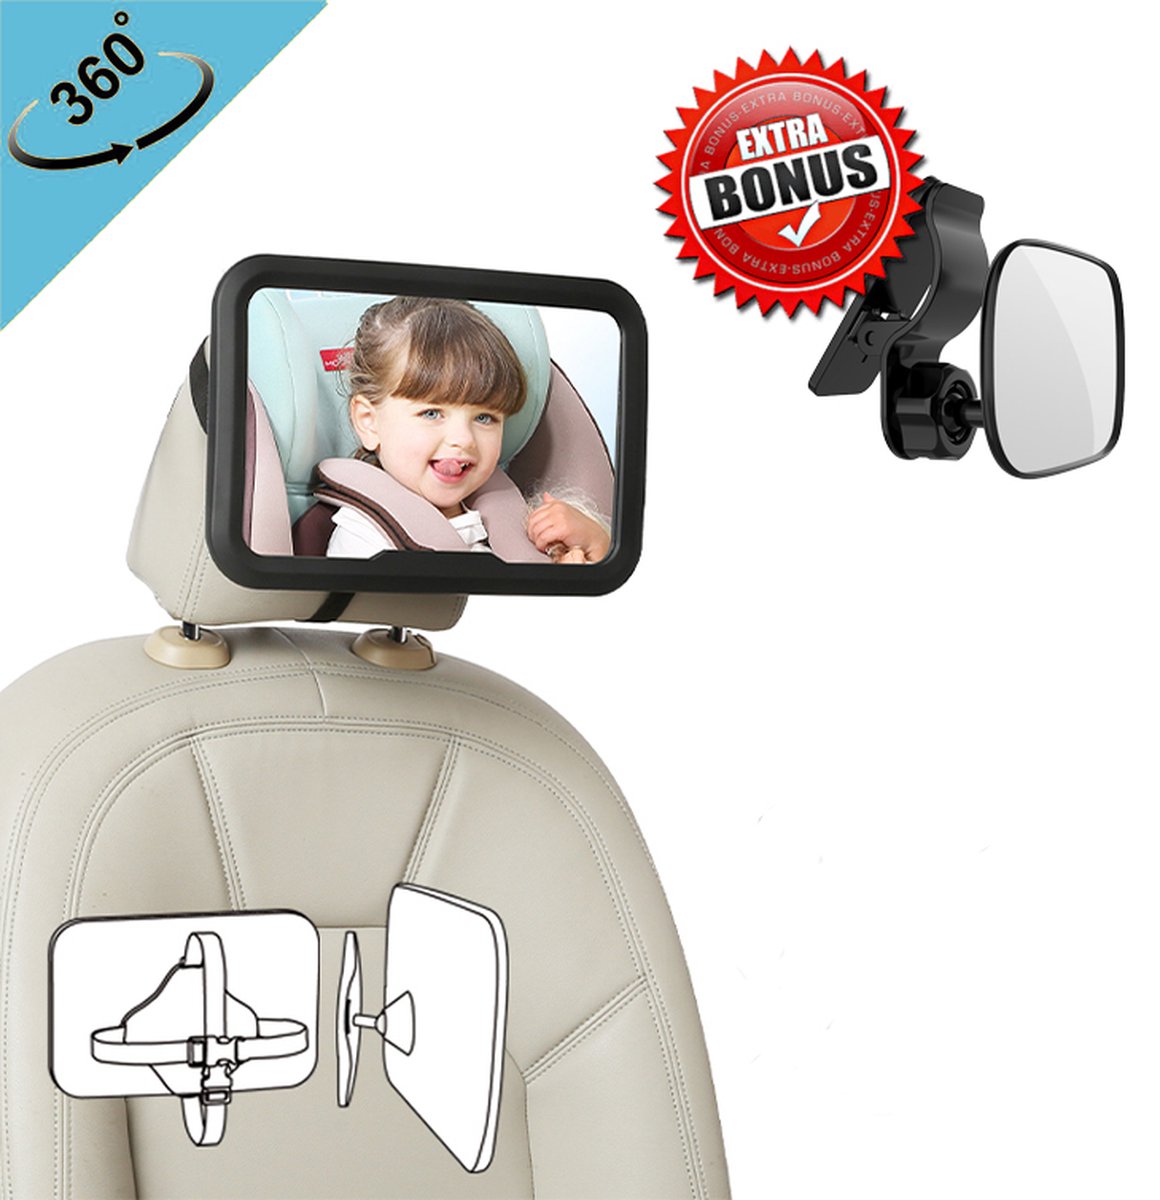 Baby & Kids Verstelbare spiegel voor in de auto - Kinderspiegel Auto - Autospiegel baby - 360 graden draaibaar - zwart